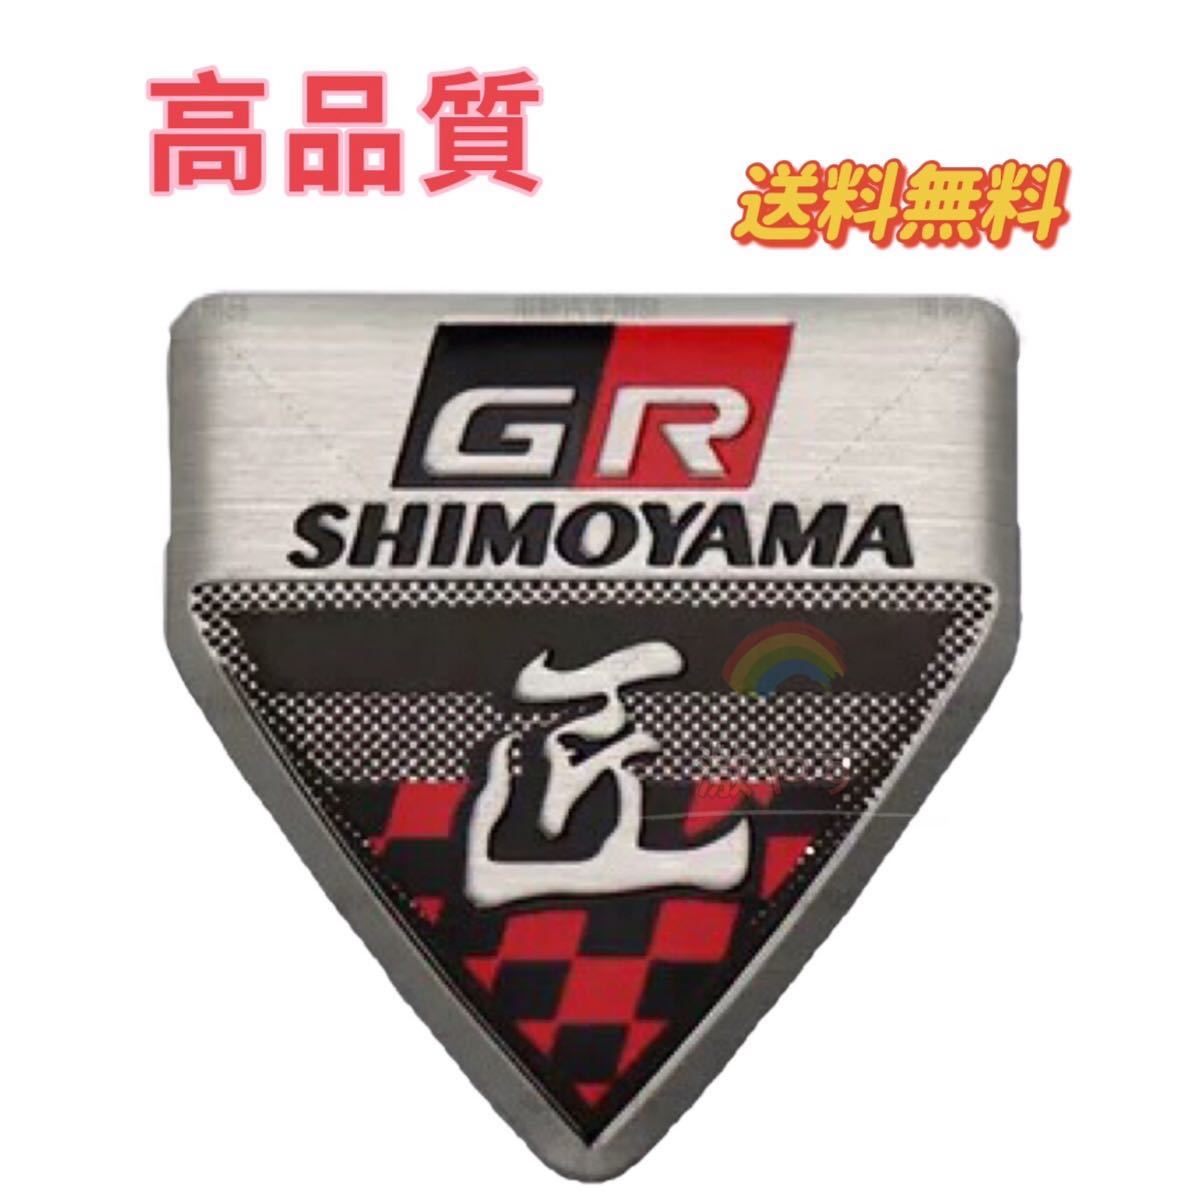  Toyota GR Takumi ga Zoo racing 1 sheets made of metal 3D emblem 